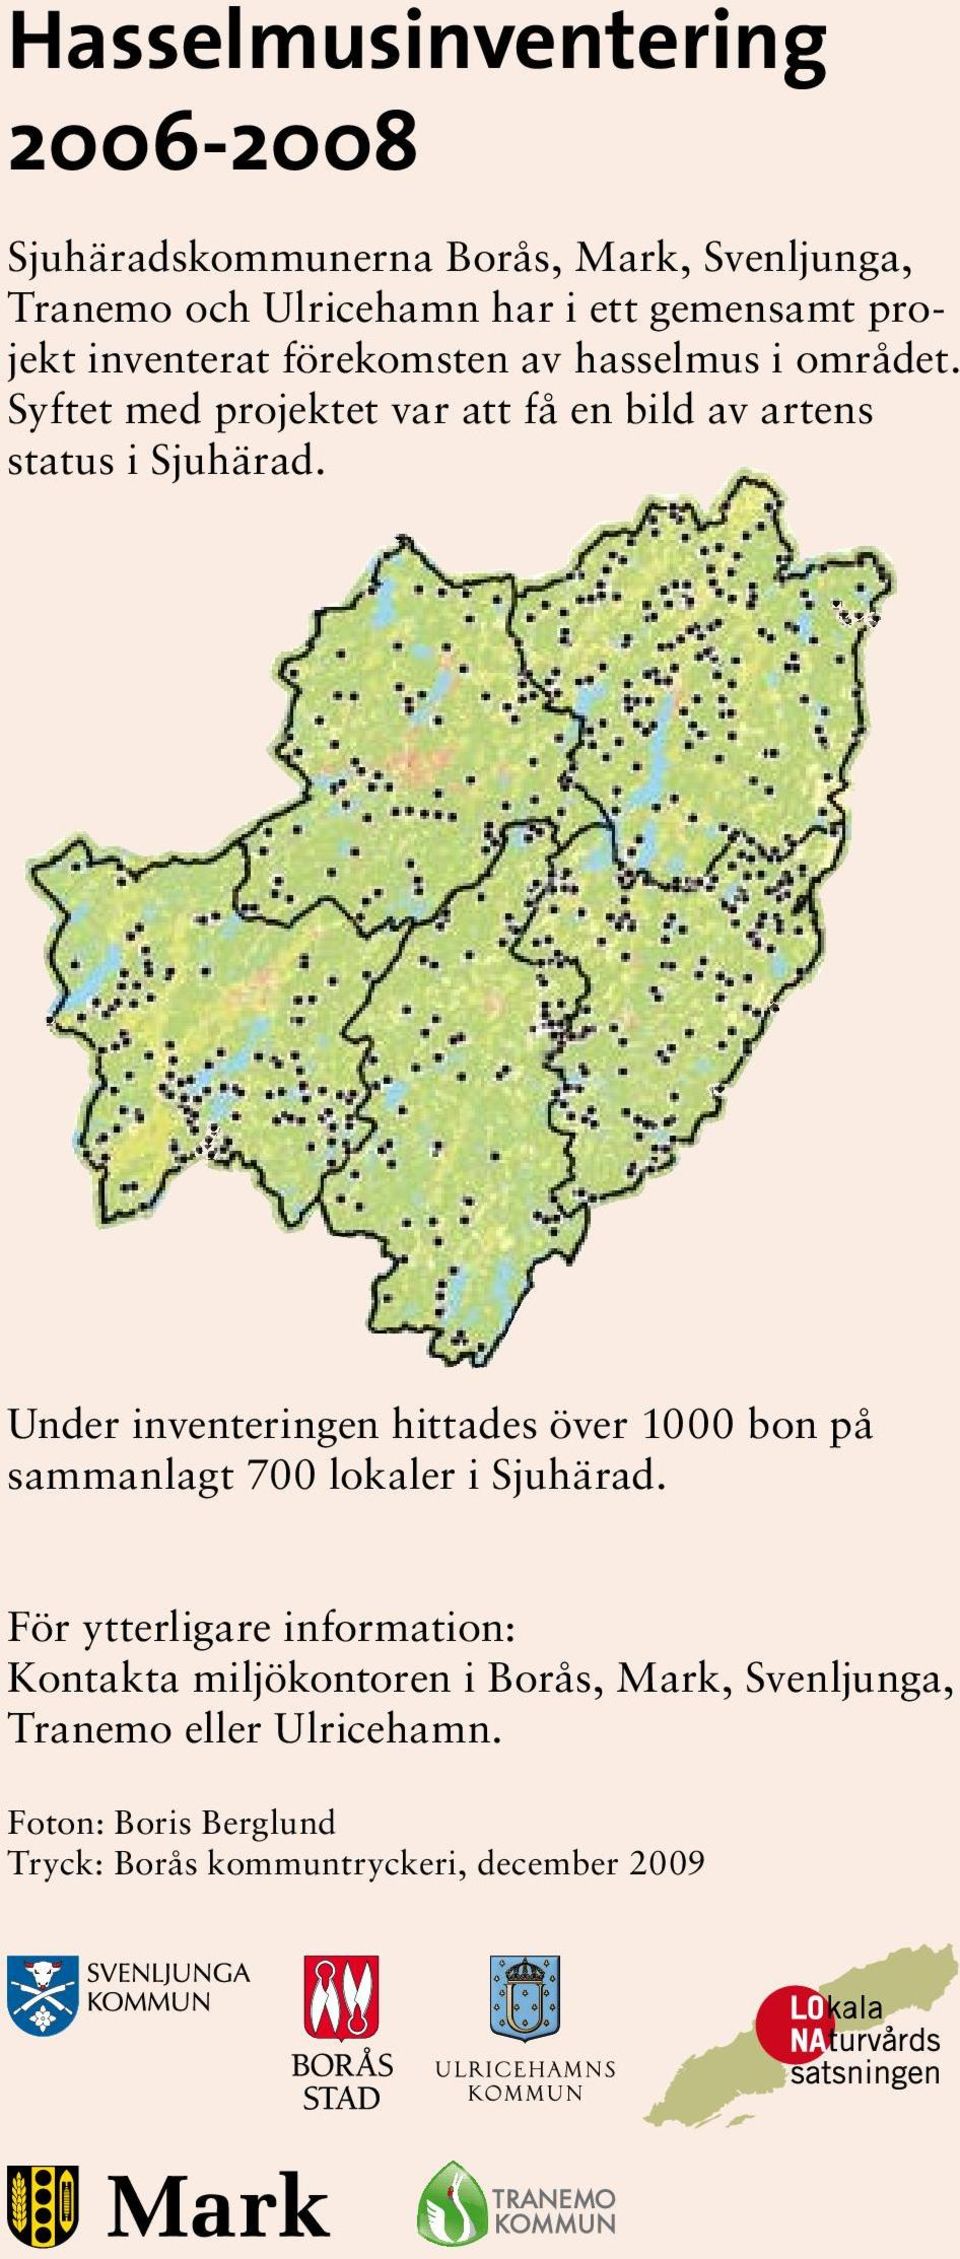 Under inventeringen hittades över 1000 bon på sammanlagt 700 lokaler i Sjuhärad.